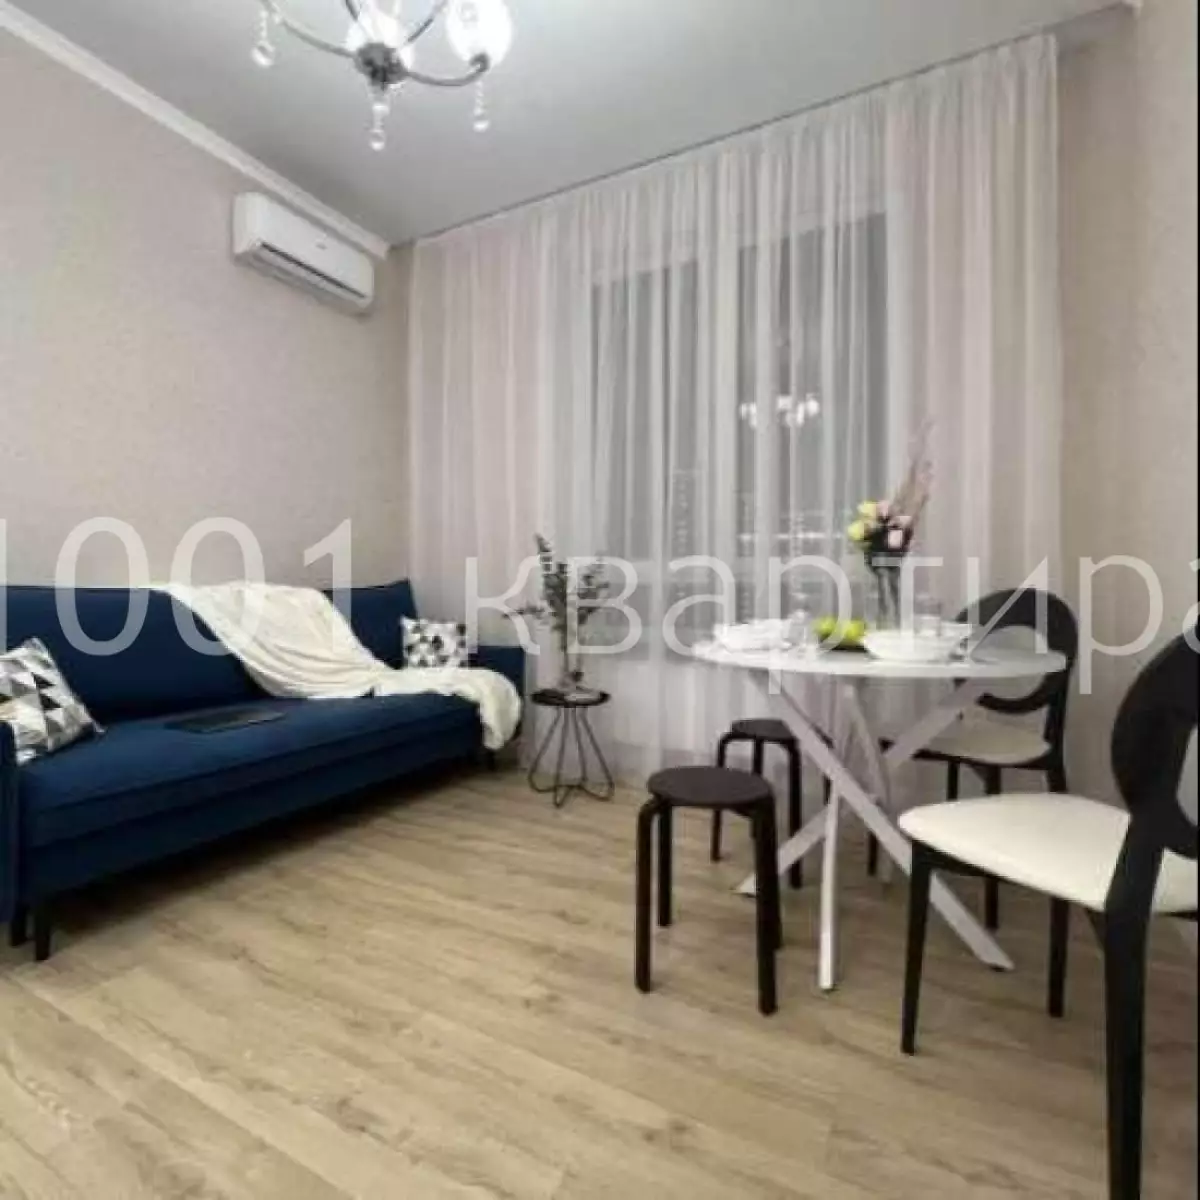 Вариант #140868 для аренды посуточно в Казани Чистопольская , д.88 на 5 гостей - фото 11